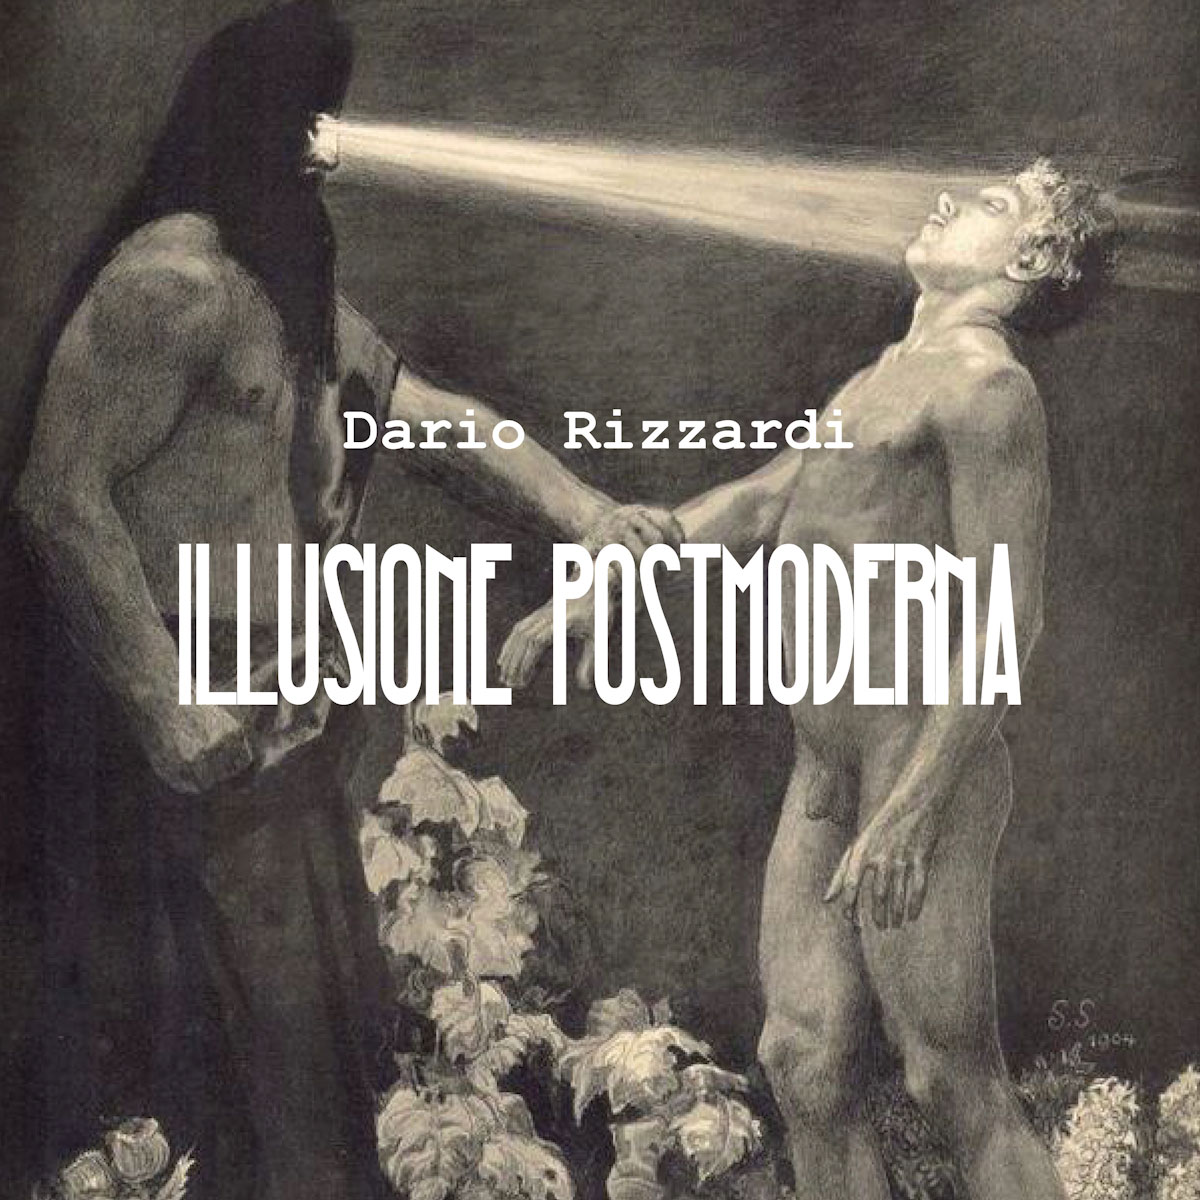 Al momento stai visualizzando Dario Rizzardi: “Illusione Postmoderna” il nuovo singolo